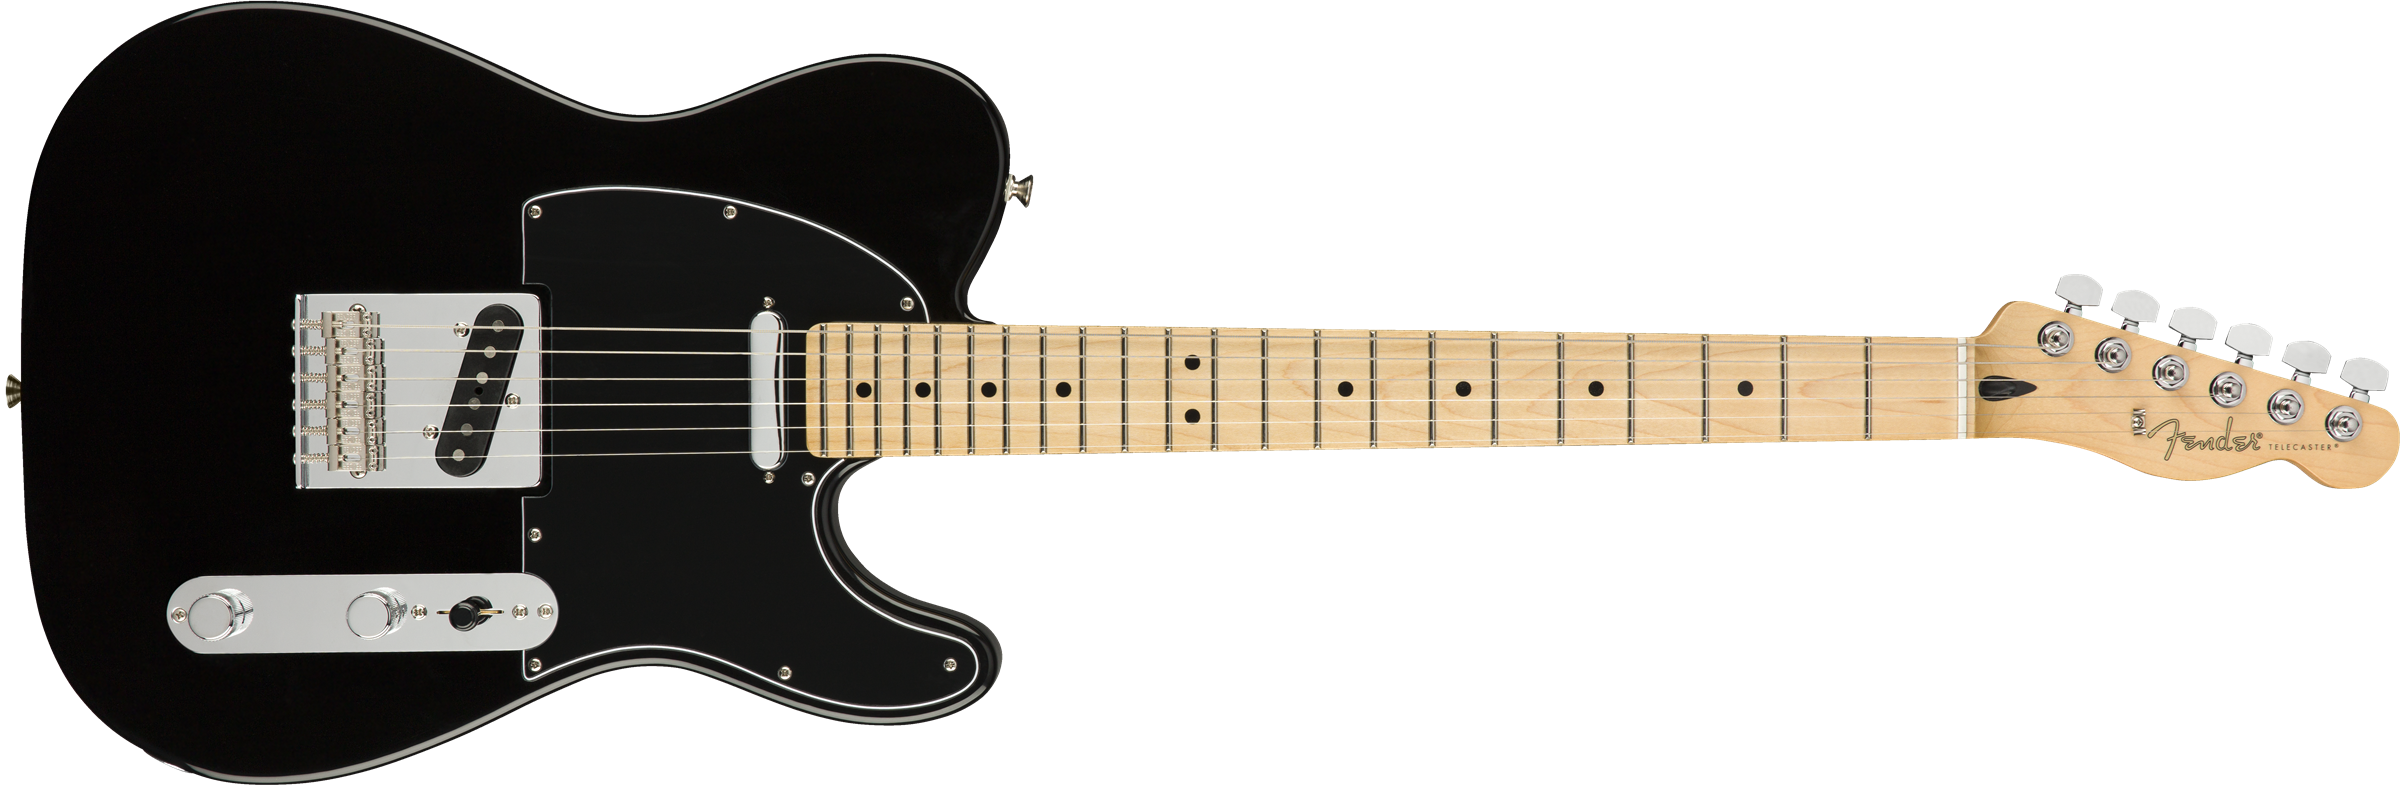 Fender Tele Player Mex Mn - Black - Guitarra eléctrica con forma de tel - Variation 1